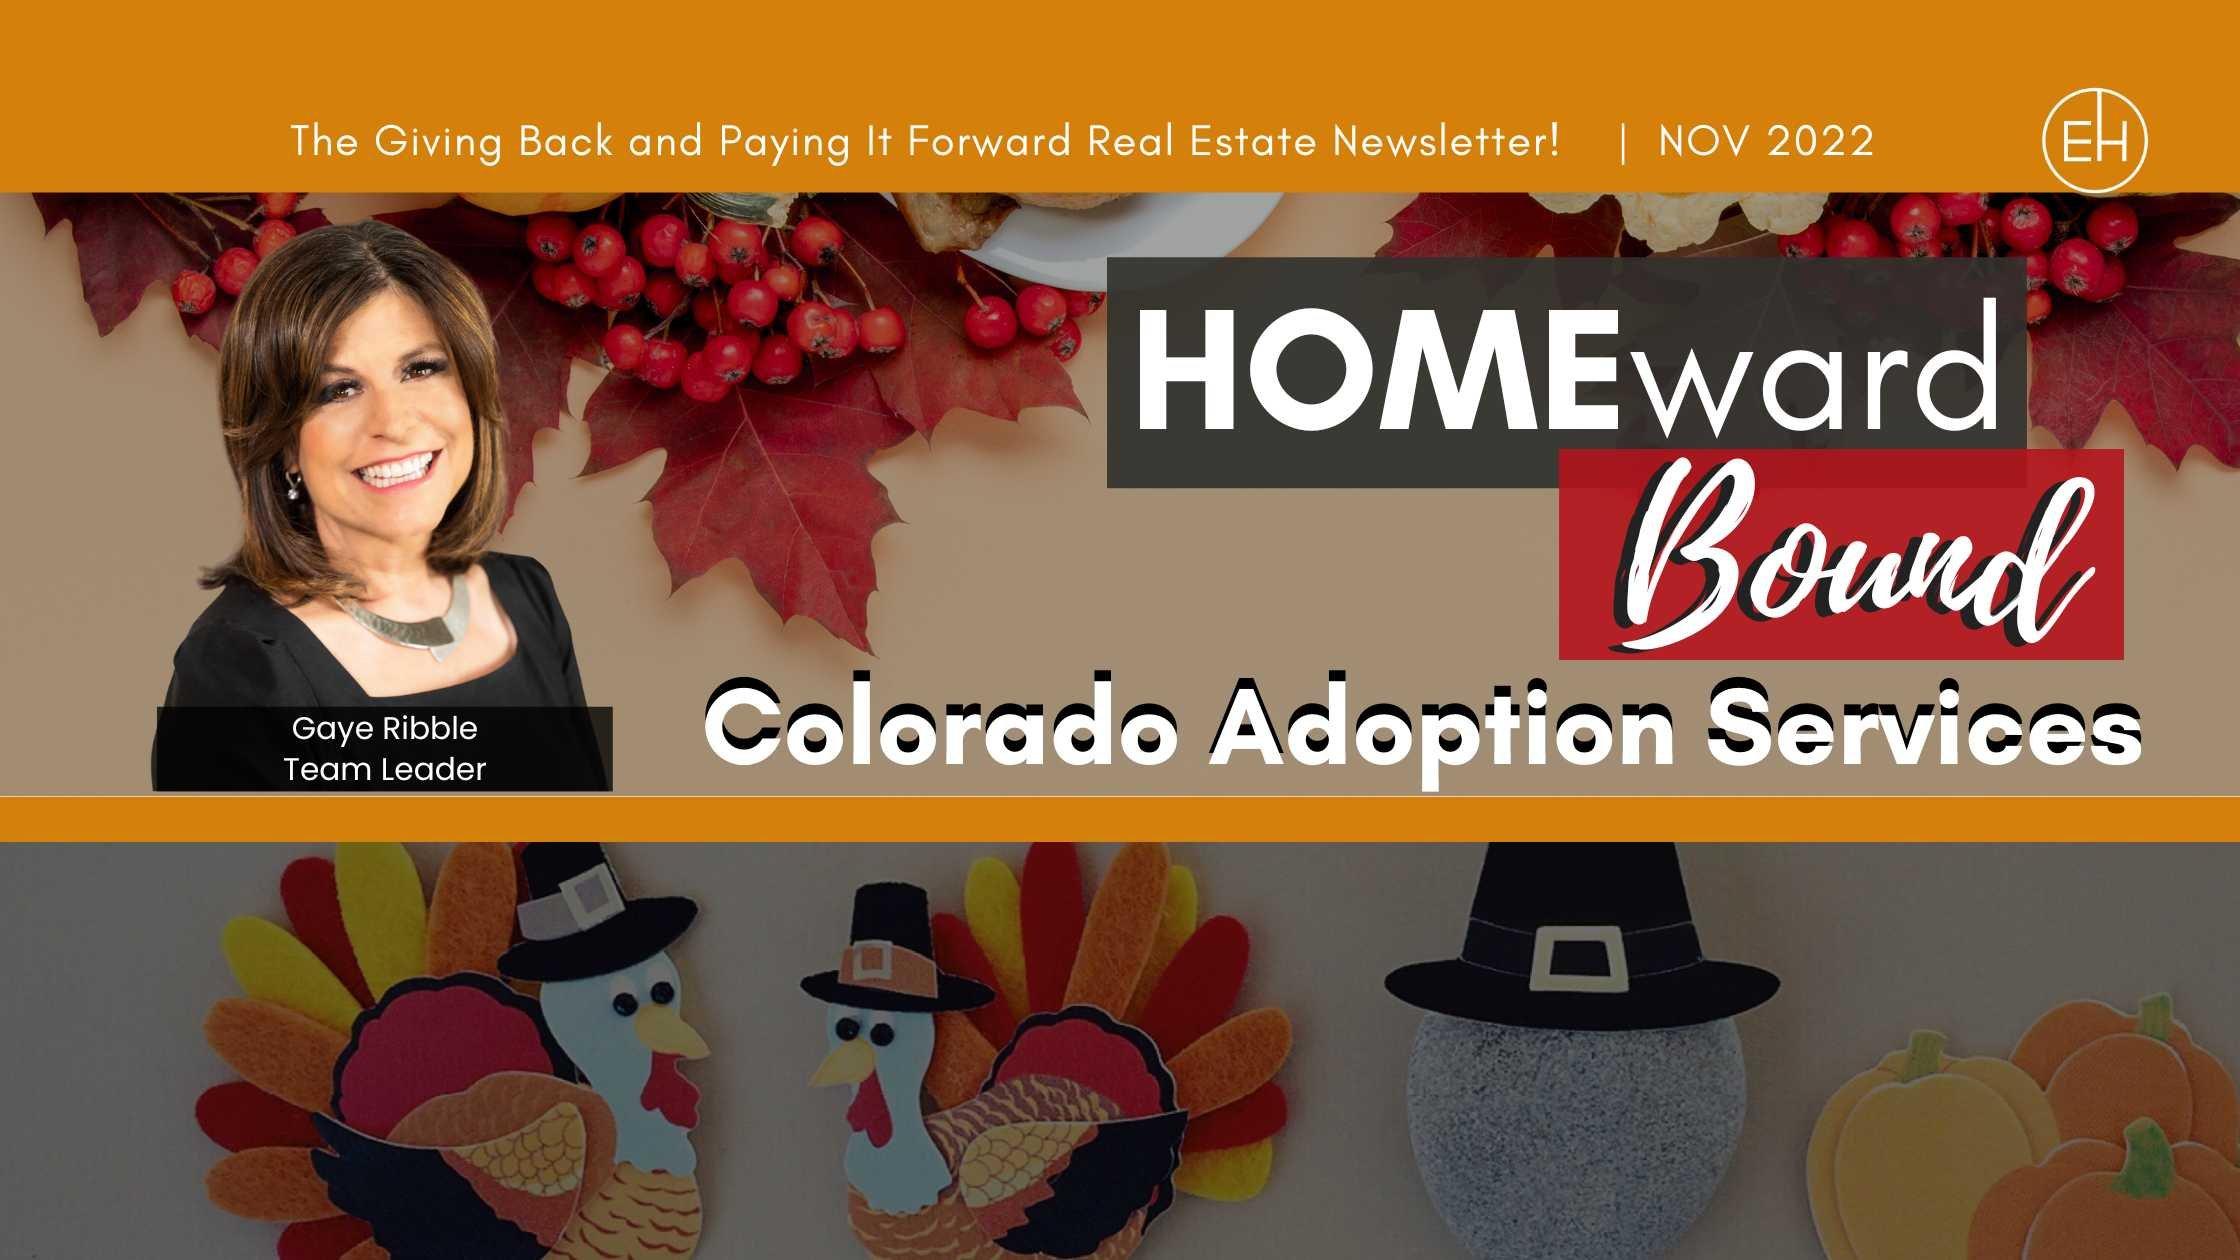 Homeward Bound Real Estate Newsletter November 2022 for Denver, CO!